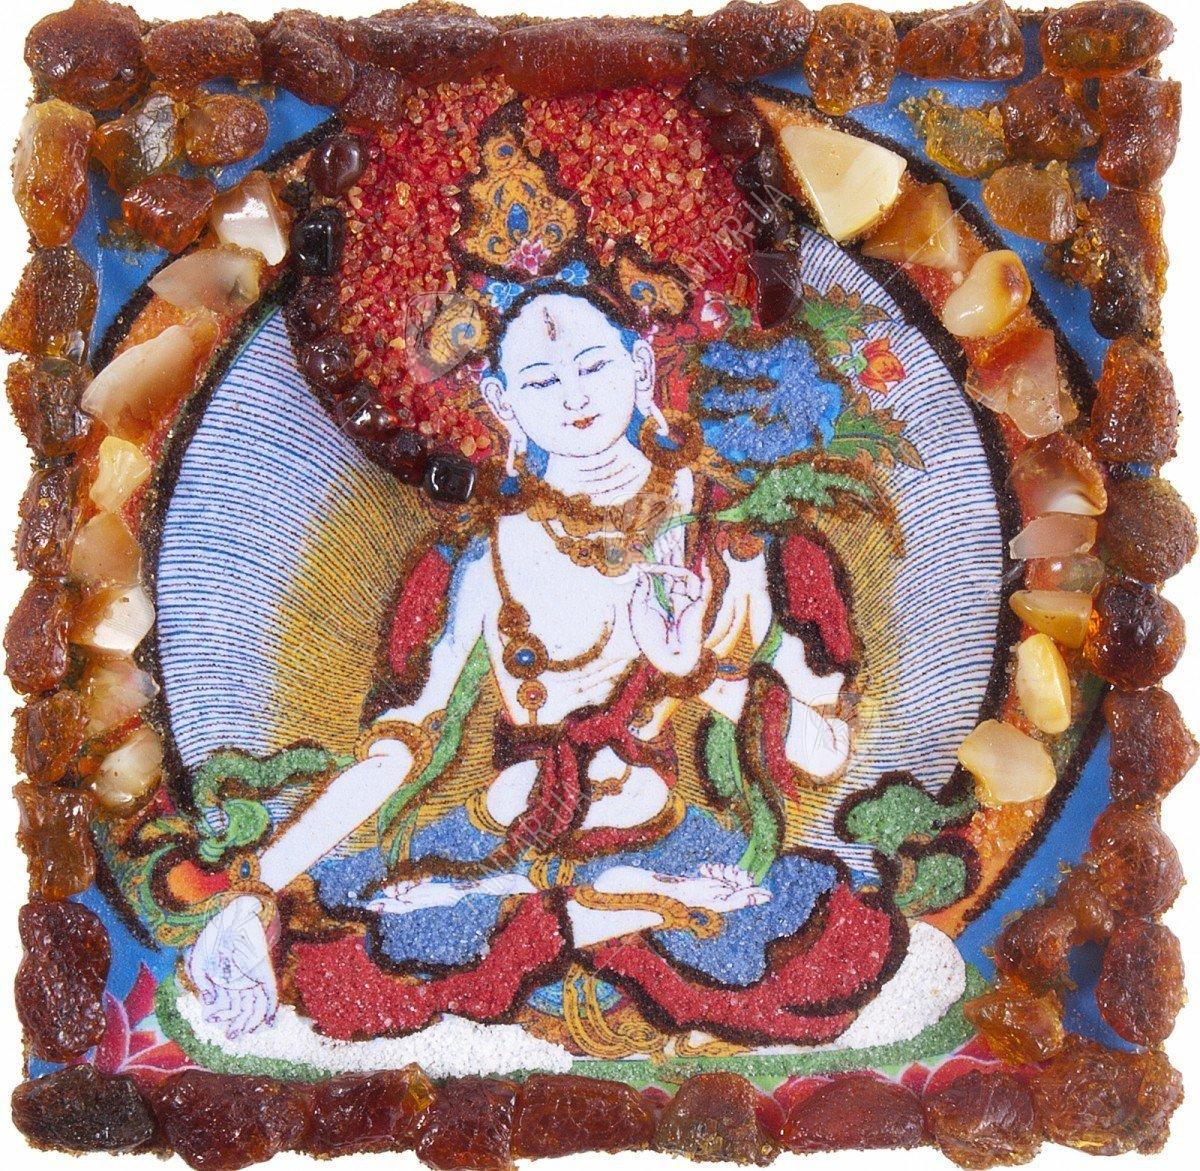 Сувенірний магніт «Буддійський живопис Танка» (Тара)